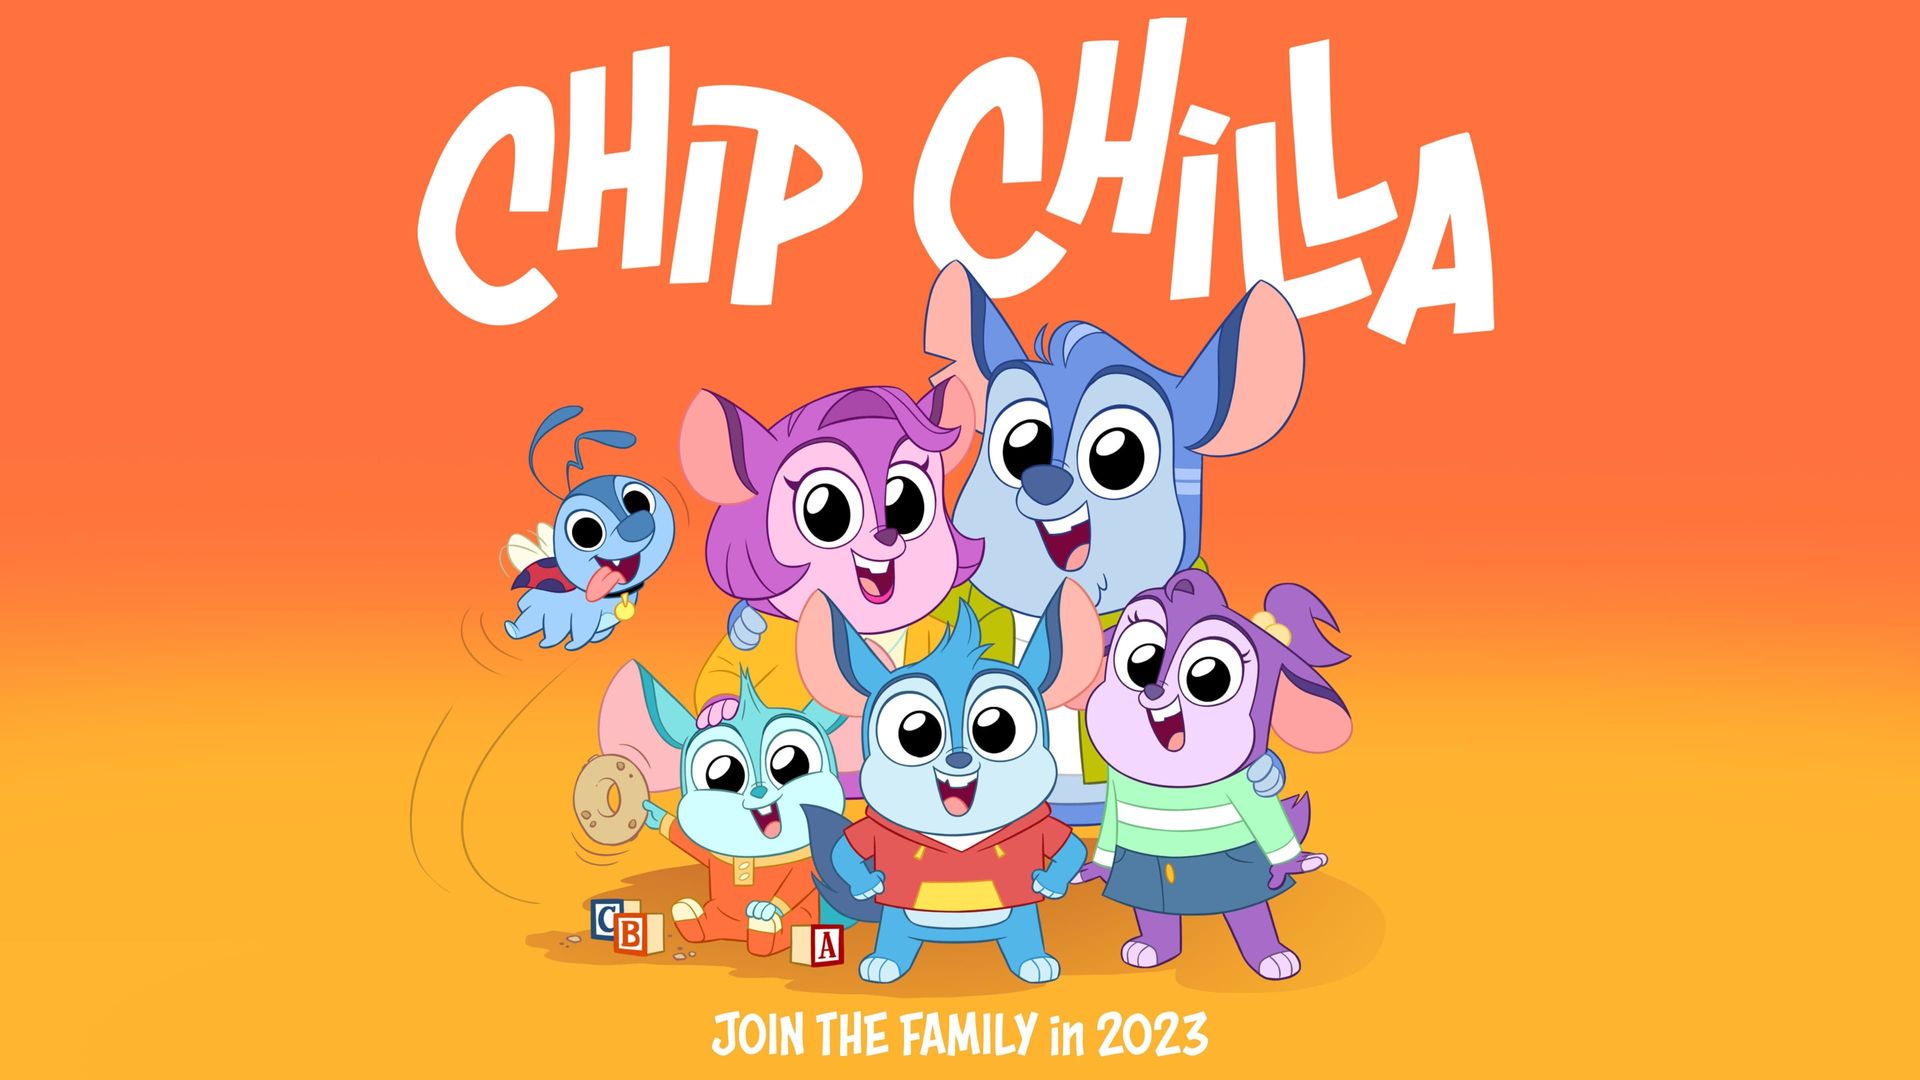 Chip Chilla background